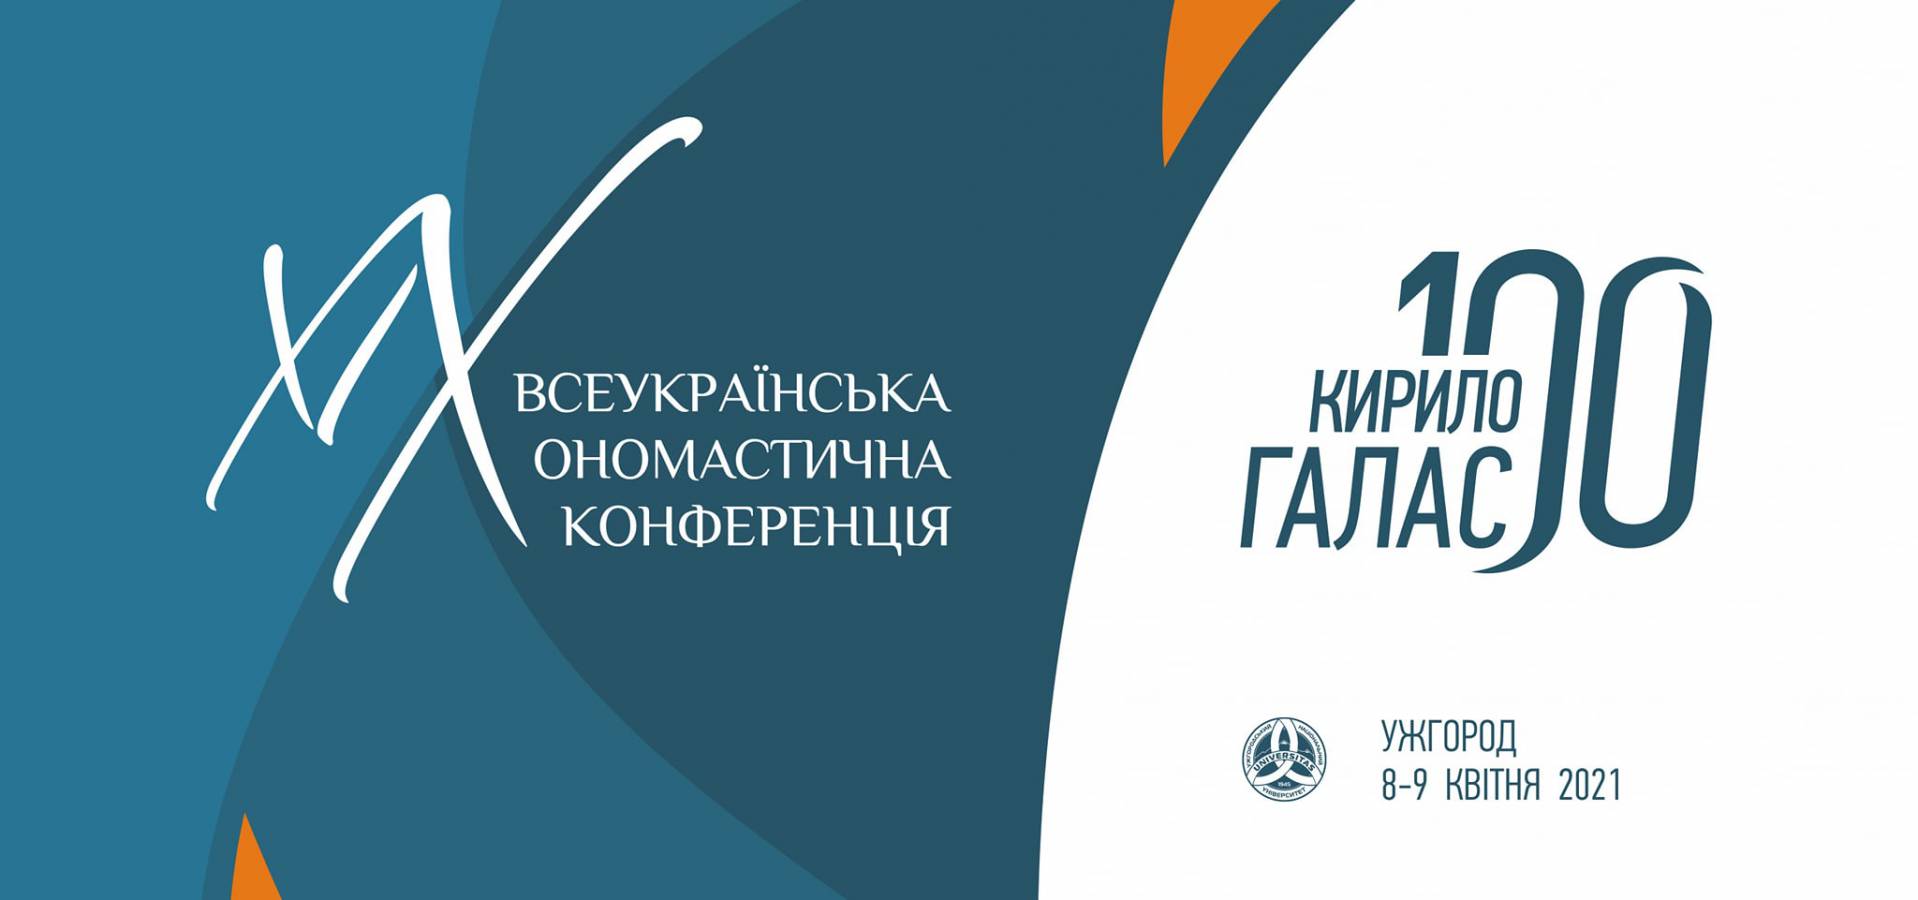 До 100-річчя з дня народження Кирила Галаса на філфаку відбулася ХІХ Всеукраїнська ономастична конференція